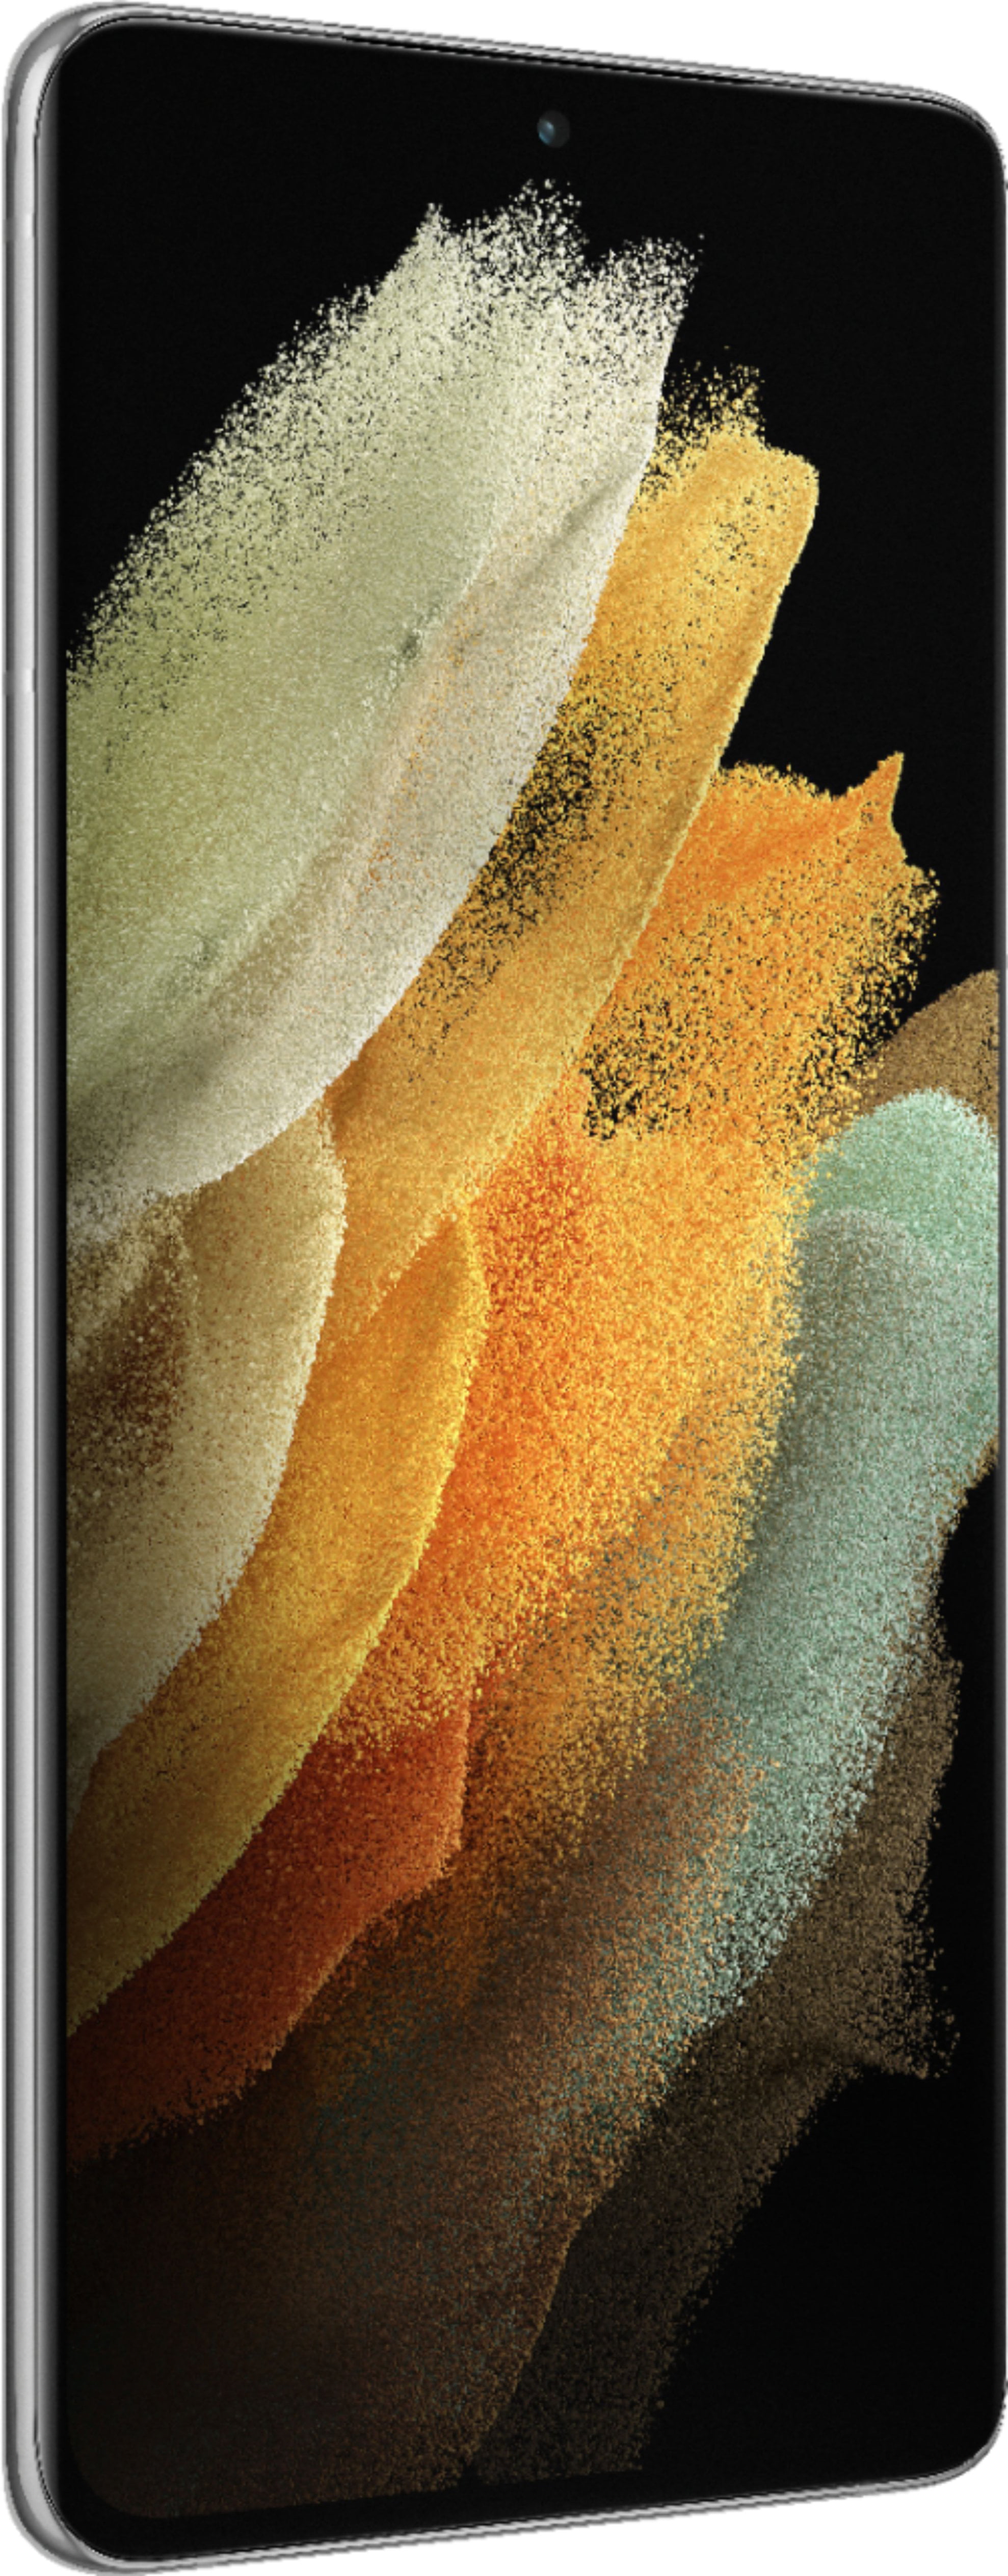 Samsung Galaxy S21 Ultra Dual-SIM 256GB 5G SM-G998BD256B B&H